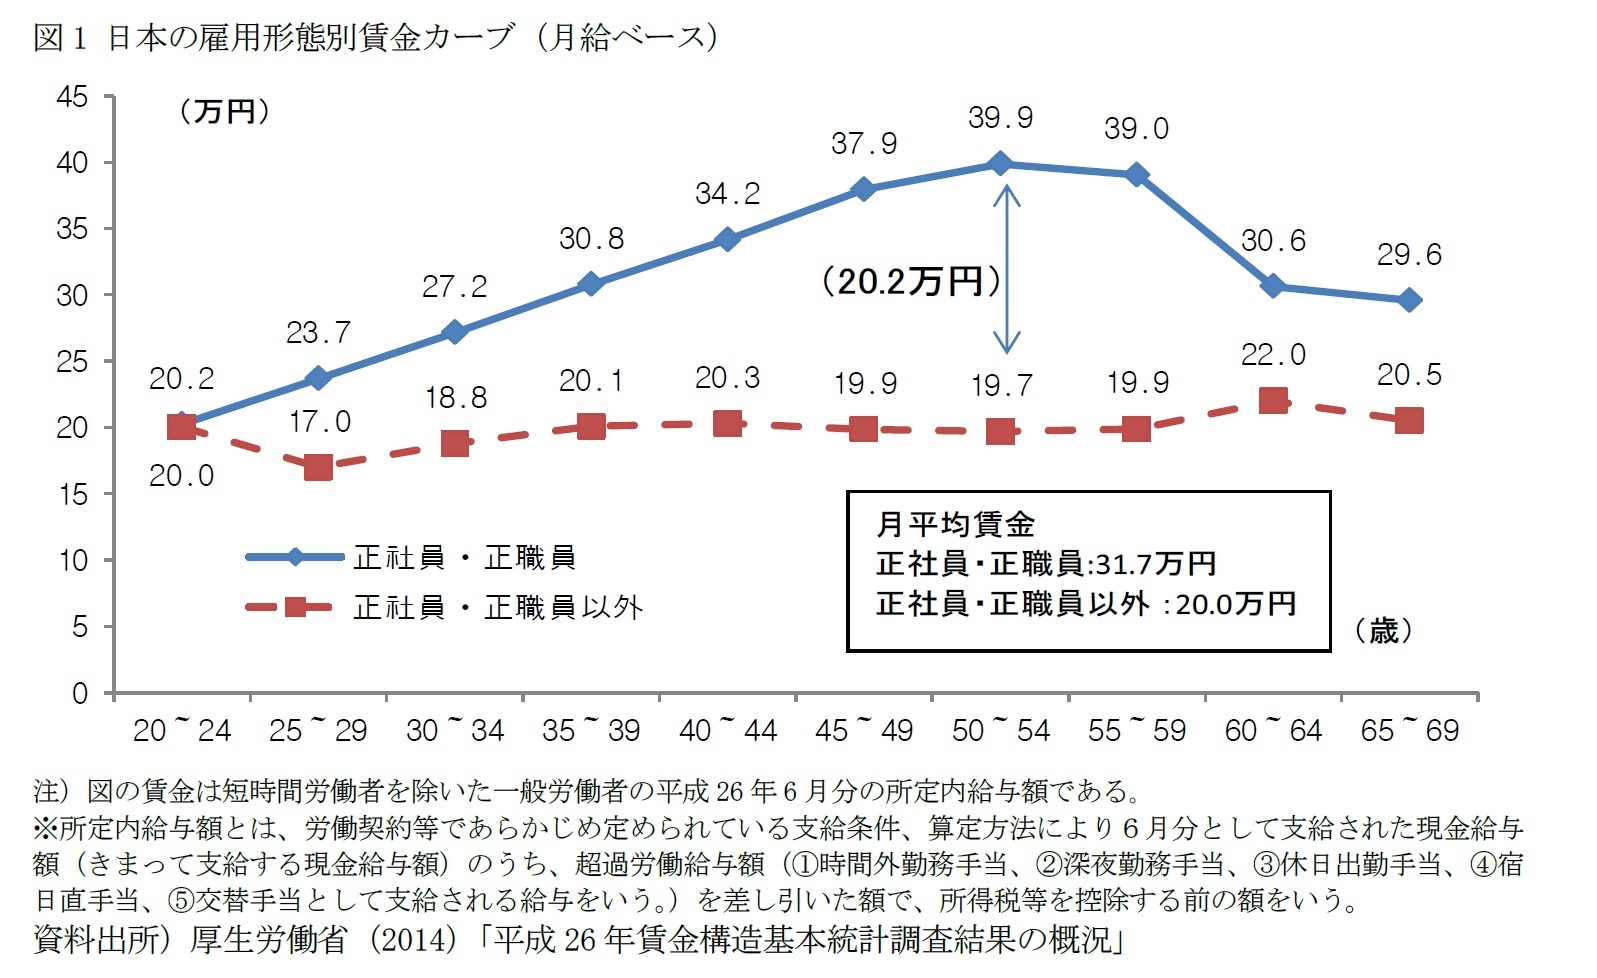 図1 日本の雇用形態別賃金カーブ（月給ベース）